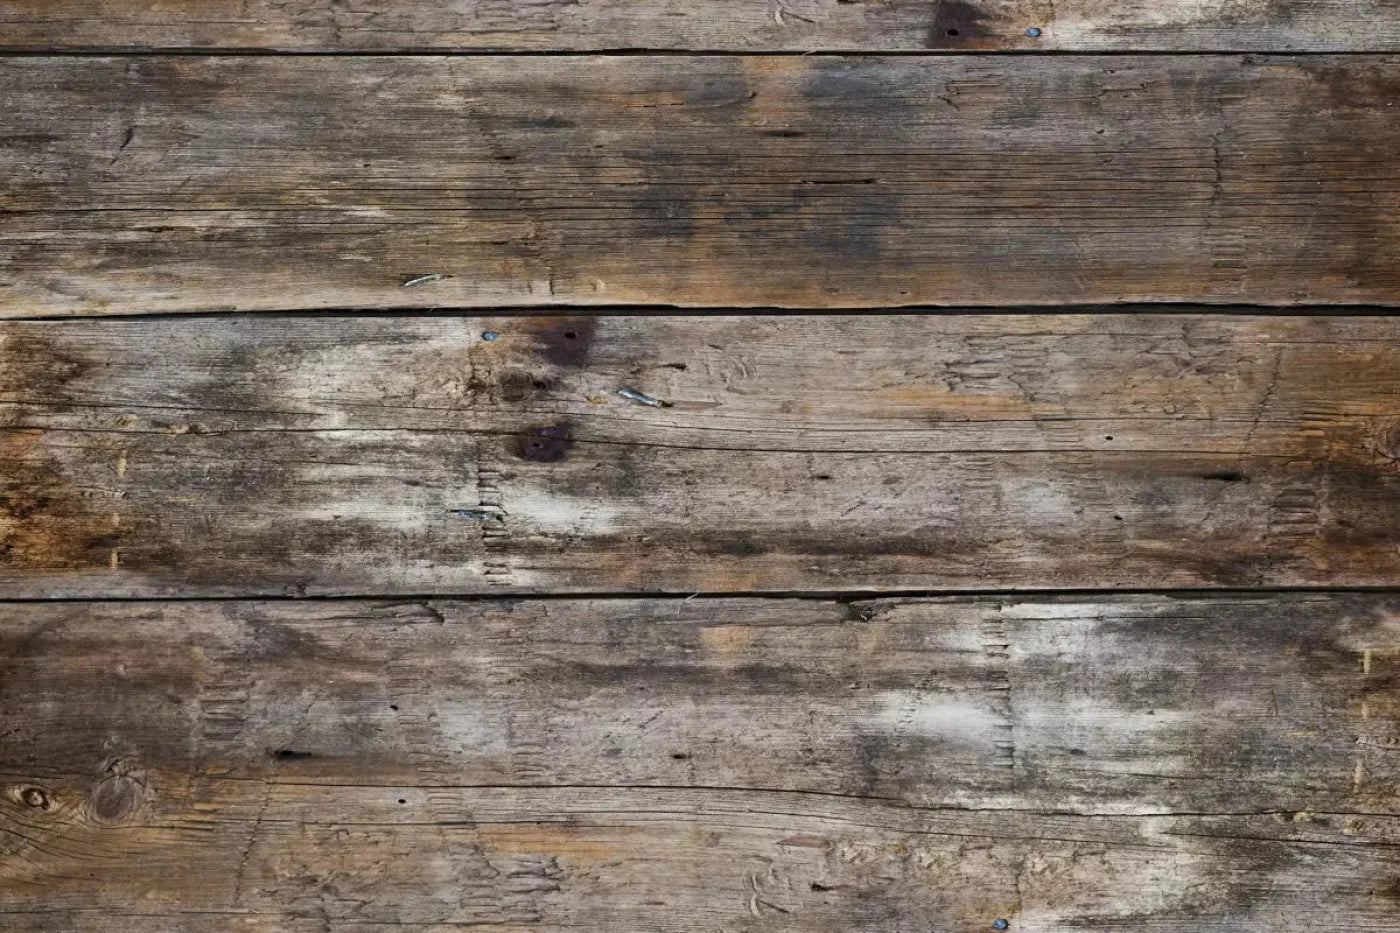 Antique Wooden Floor 5X4 Rubbermat ( 60 X 48 Inch ) Backdrop